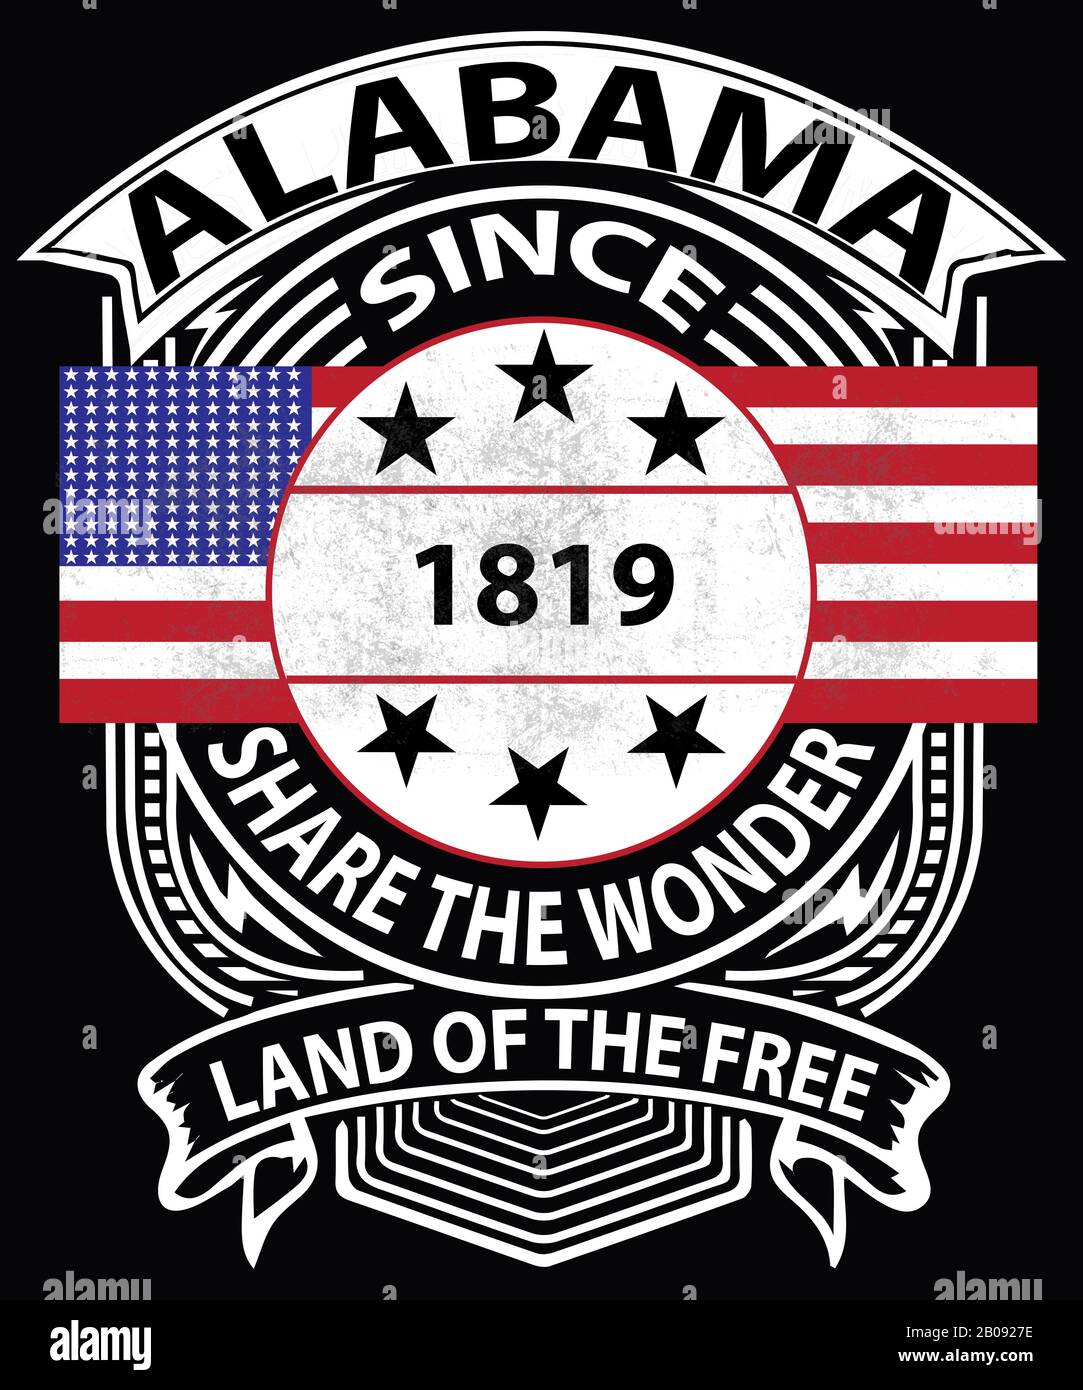 Die altmodische Typografie in Alabama mit einer grunge amerikanischen Flagge, die seit dem Jahr 1819 sagt, teilt das Wunder, dass der staatliche Slogan und das Land der Freien sind. Stockfoto